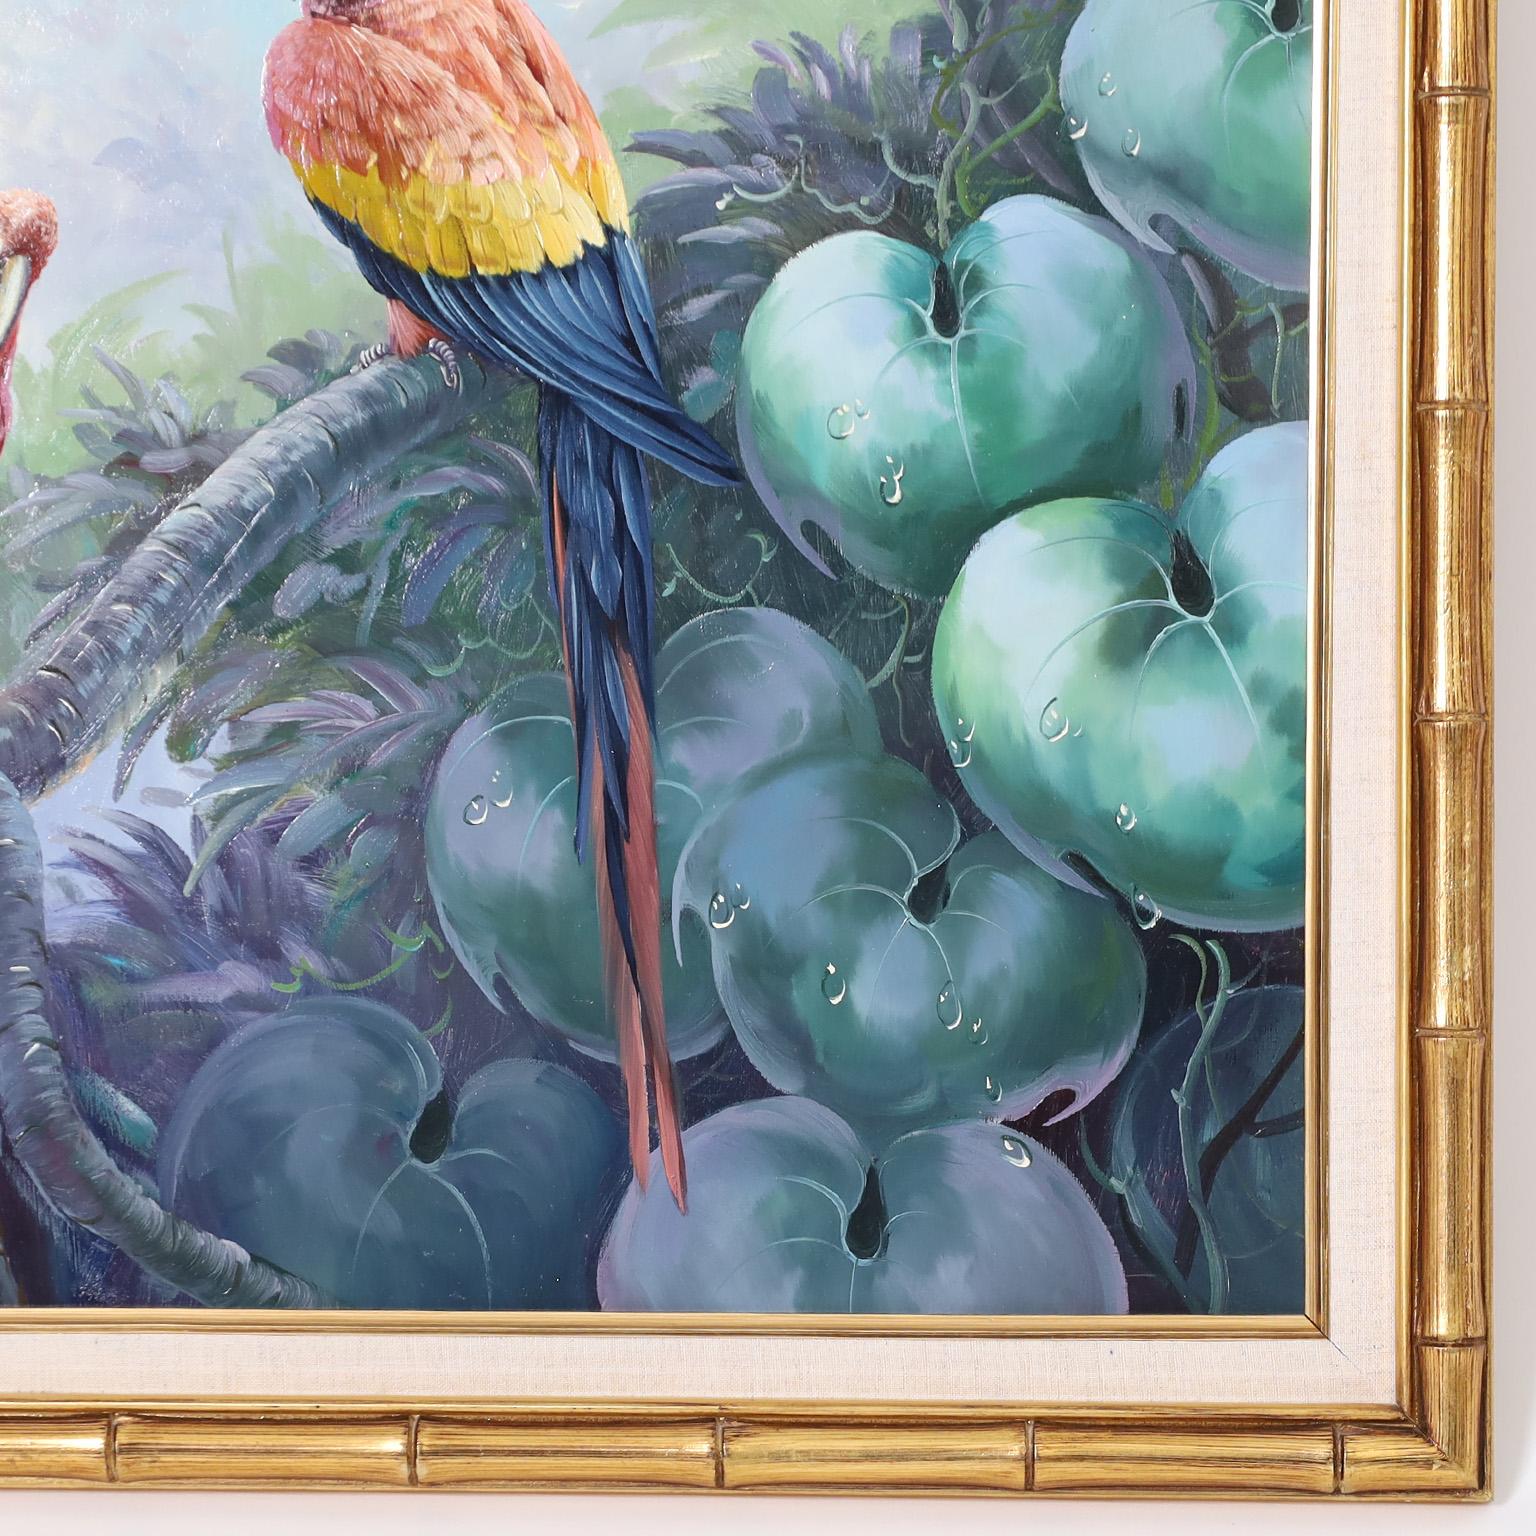 Auffallendes Ölgemälde auf Leinwand von drei Papageien in einer natürlichen Regenwaldumgebung, ausgeführt in hyperrealistischer Technik. Signiert von dem bekannten amerikanischen Künstler Andre Lange und präsentiert in einem Rahmen aus vergoldetem